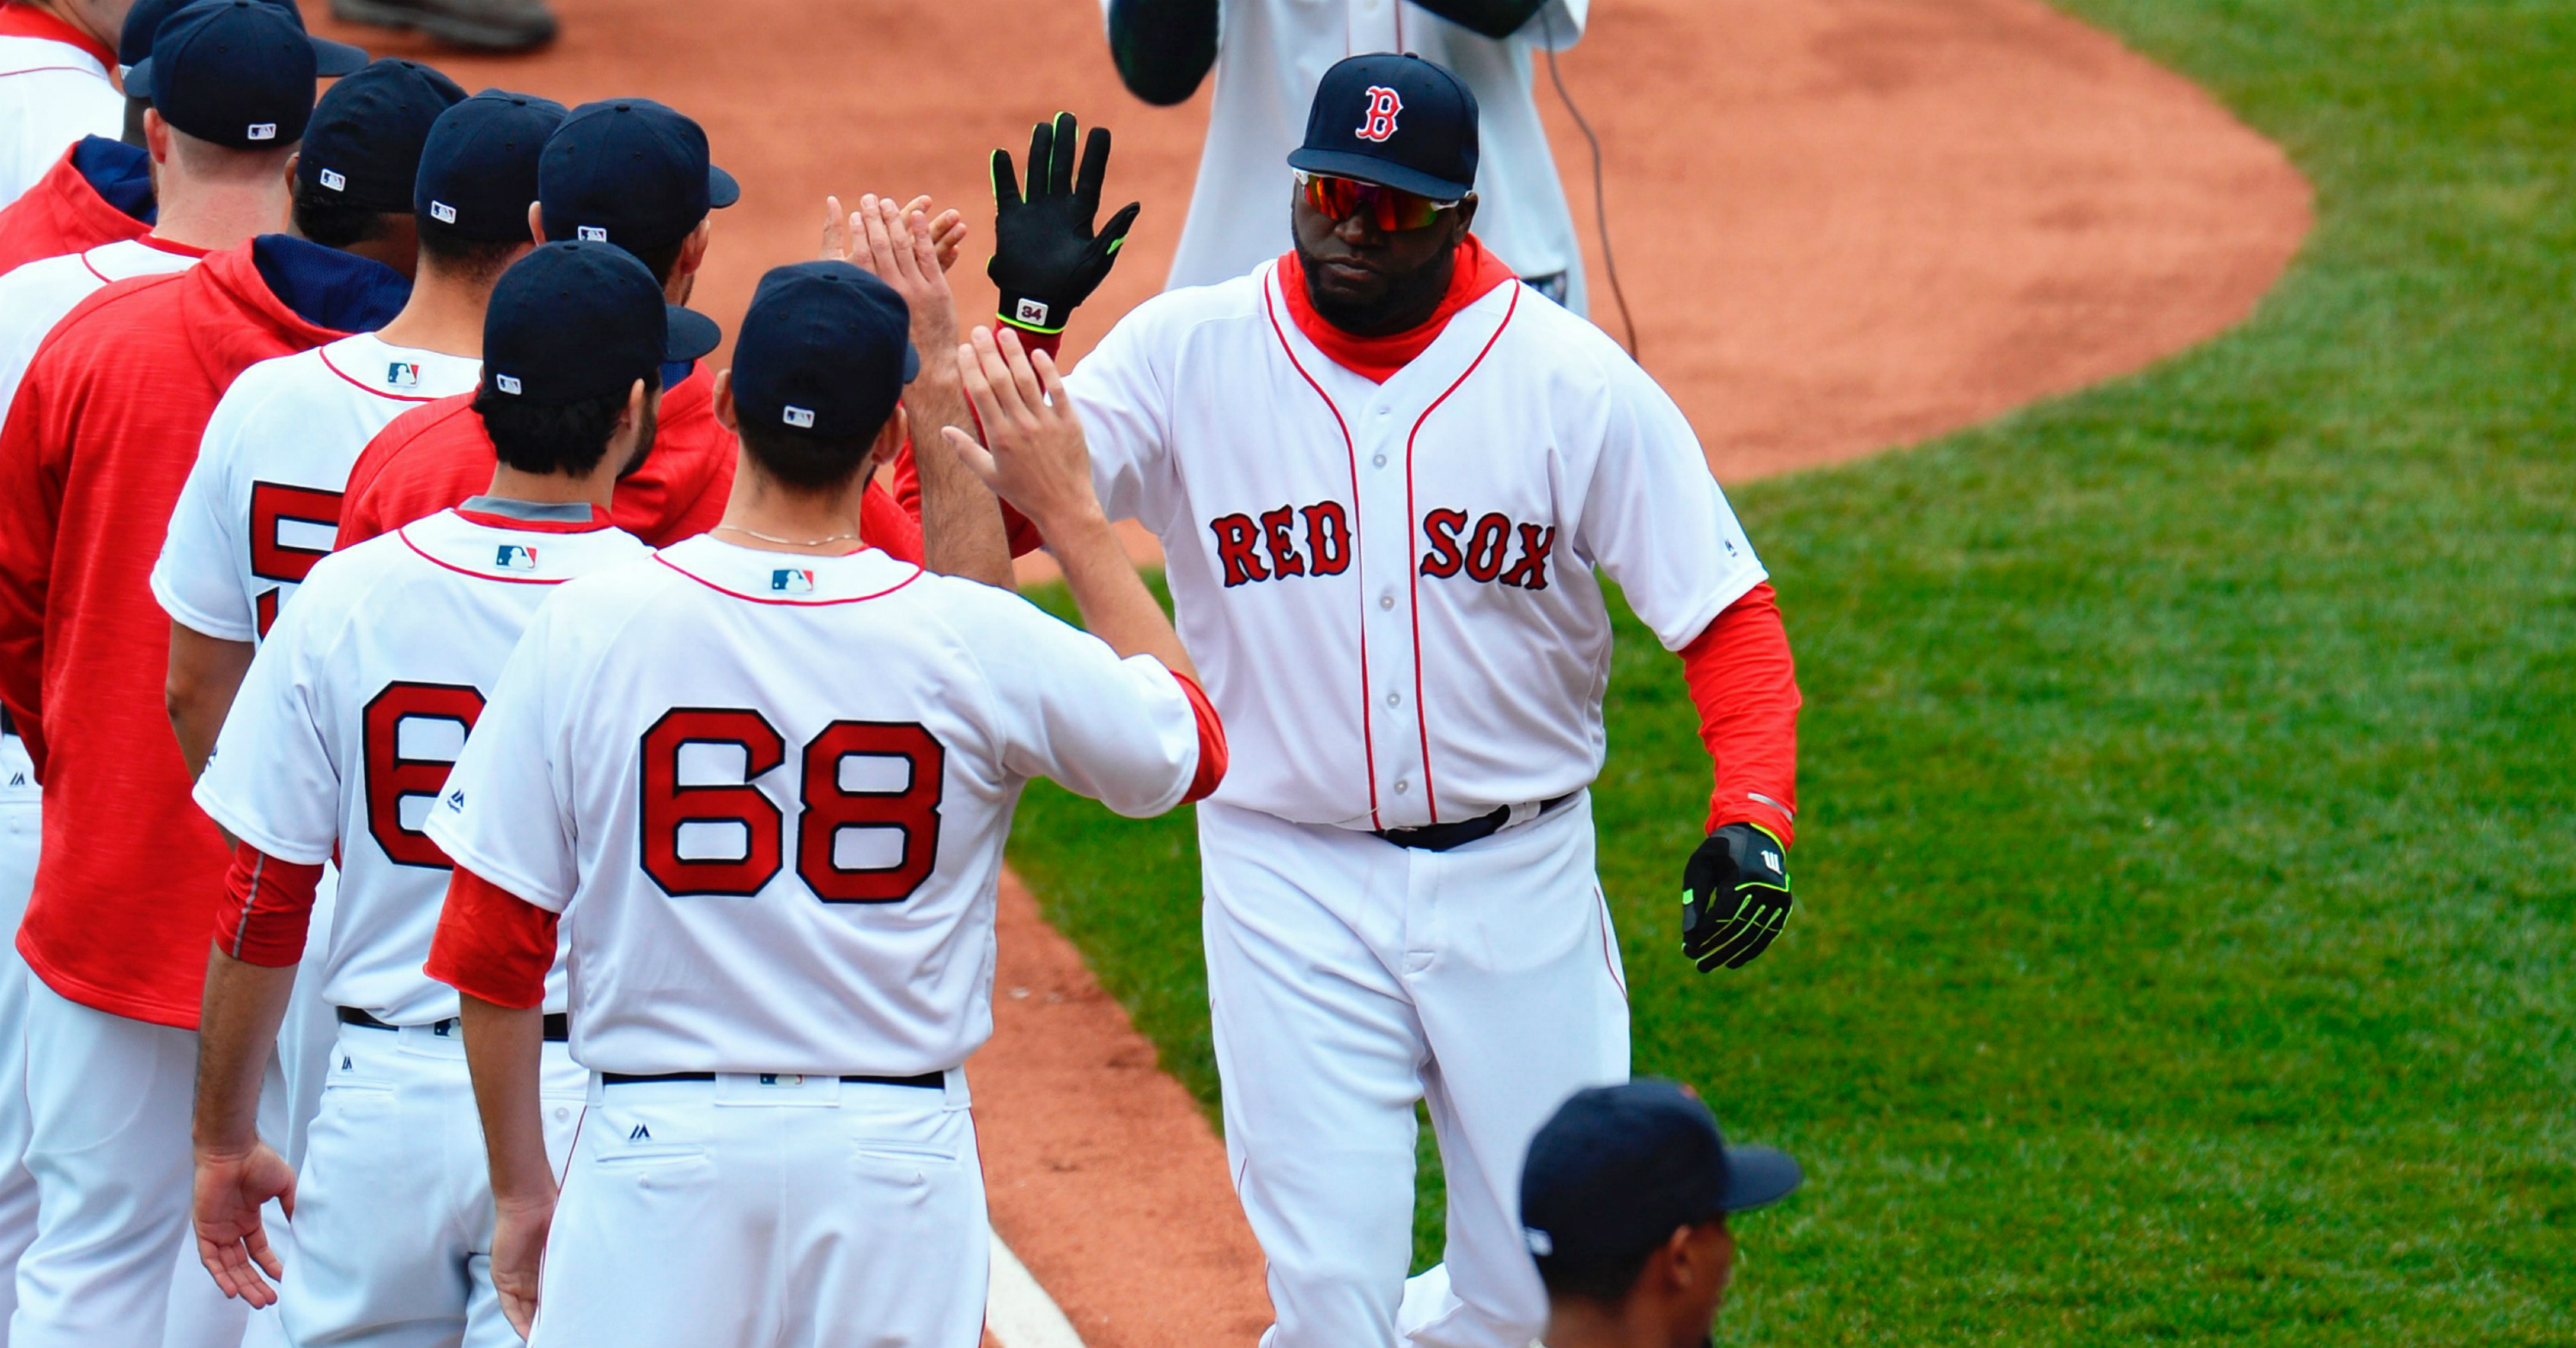 Los Medias Rojas (Red Sox) de Boston convivieron durante 84 con el maleficio del Bambino. En la imagen, David Ortiz saluda a sus compañeros antes de las acciones ante Orioles el pasado 11 de abril de 2016, en un juego de la MLB en el Fenway Park de Boston, Massachusetts (EE.UU.). EFE/CJ GUNTHER